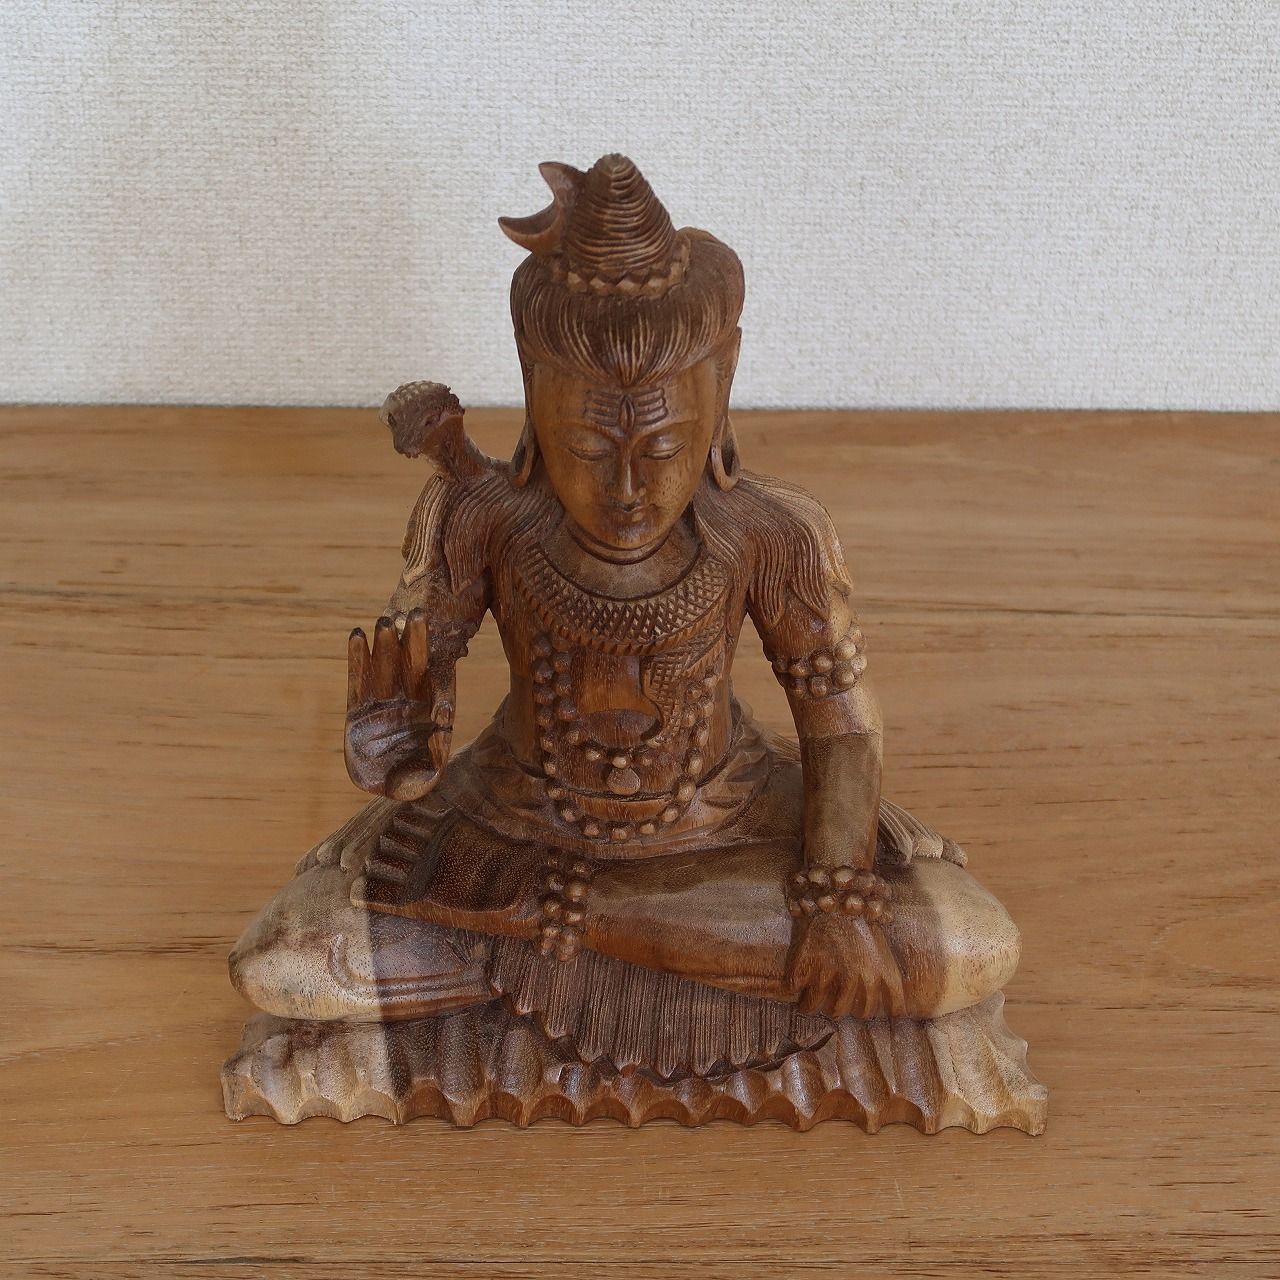 シヴァ神の木彫り 30cm 座像 木製 スワール無垢材 シバ神 オブジェ